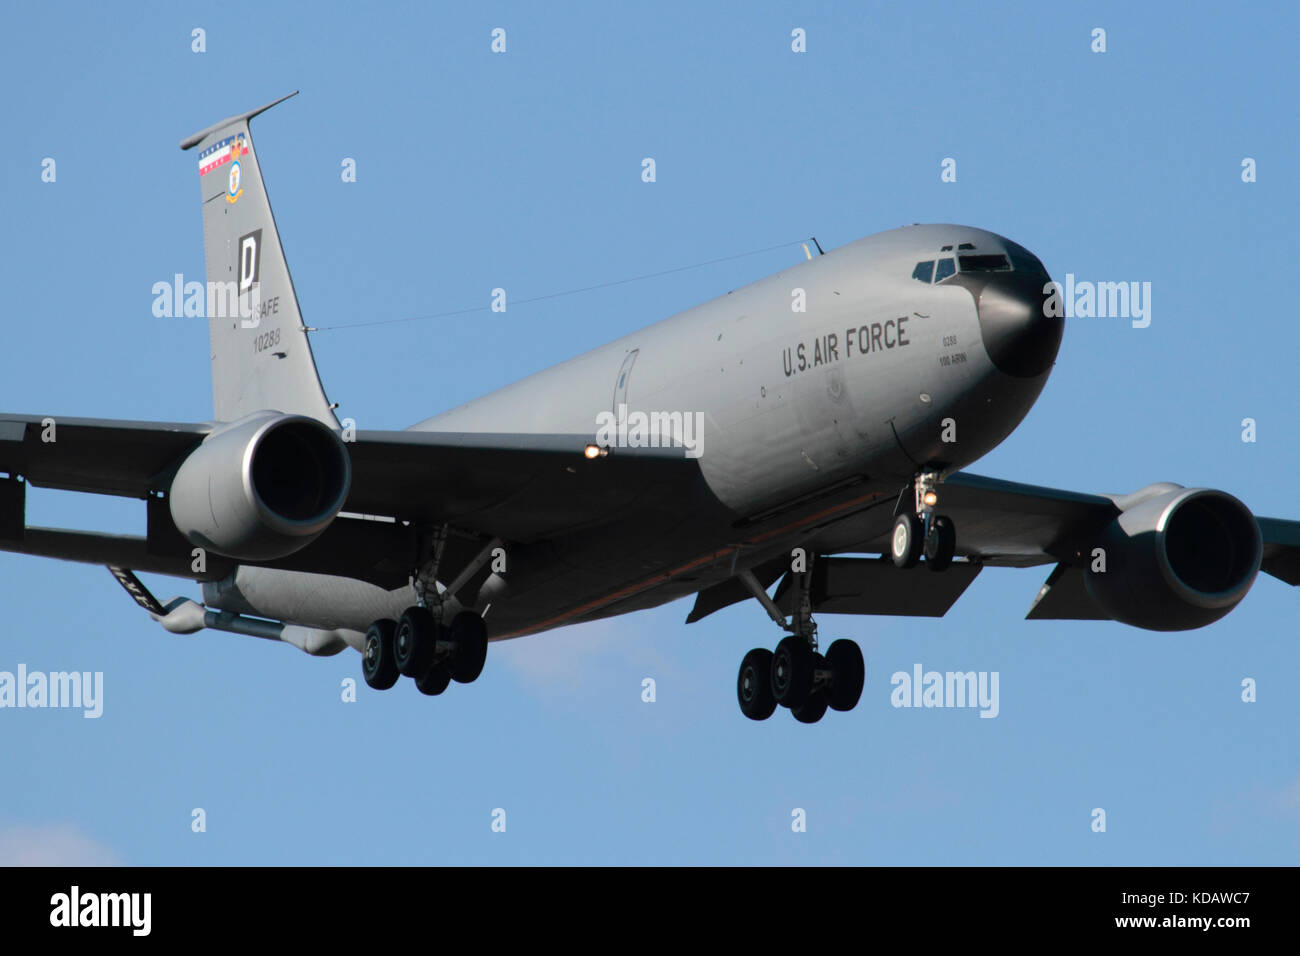 Nahaufnahme eines US Air Force KC-135 Stratotanker betanken Flugzeuge auf Ansatz. Militärische Luftfahrt. Stockfoto